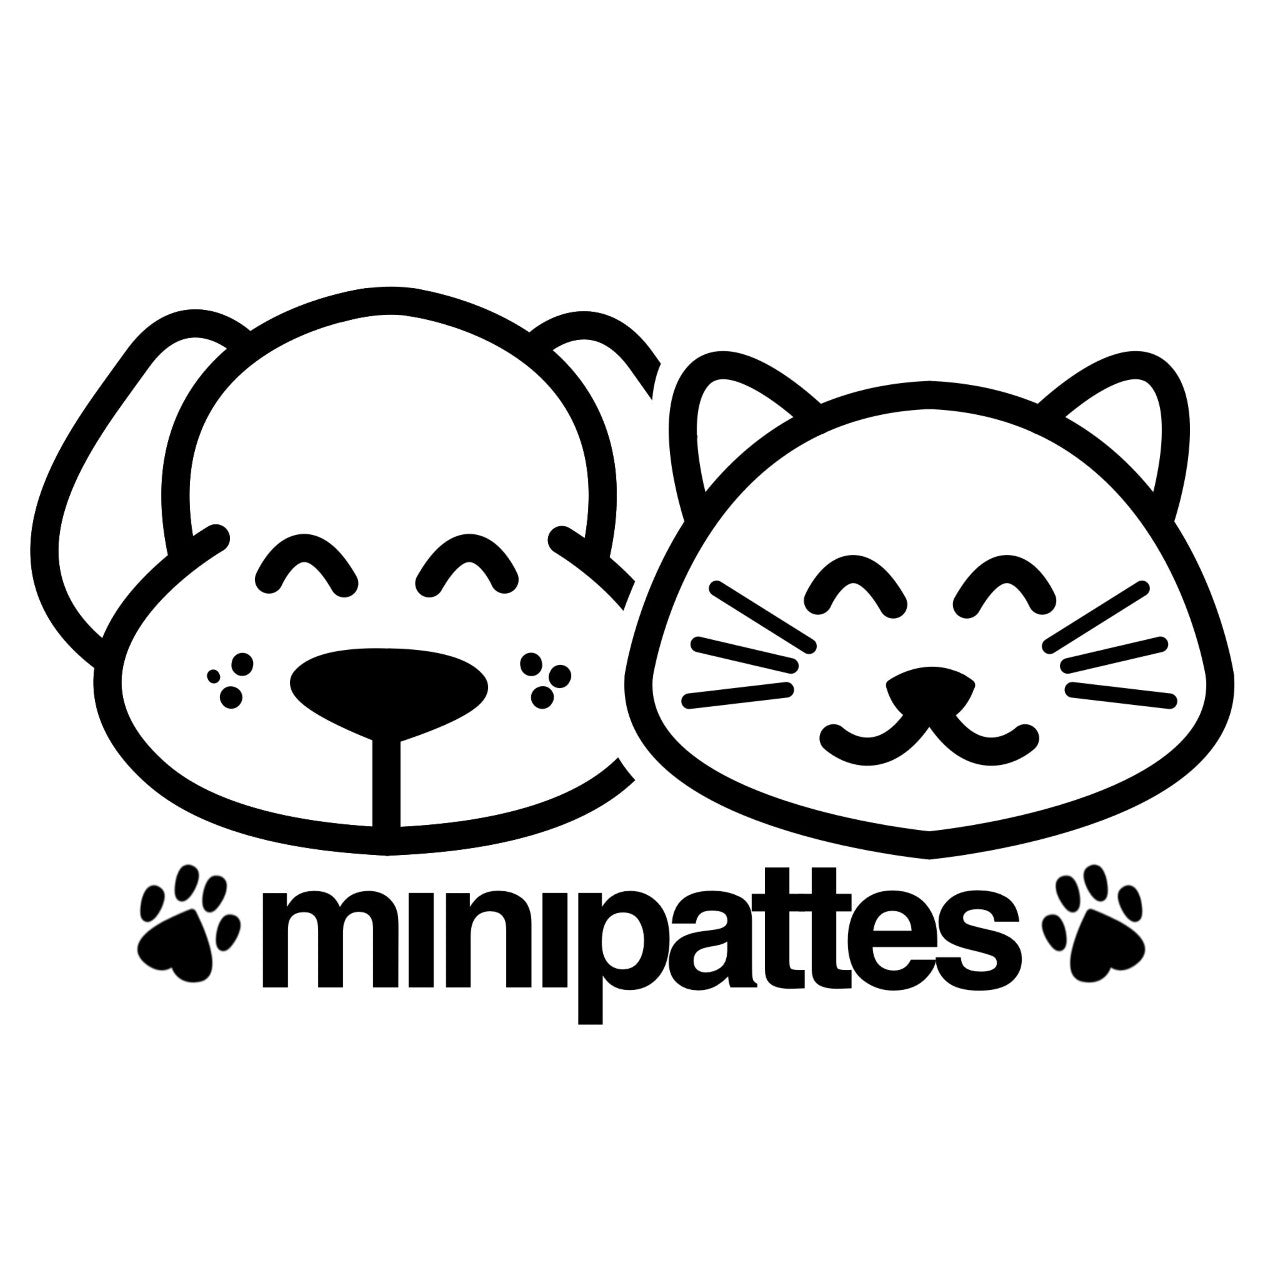 Minipattes, boutique spécialisée dans les articles pour petits chiens et chats.